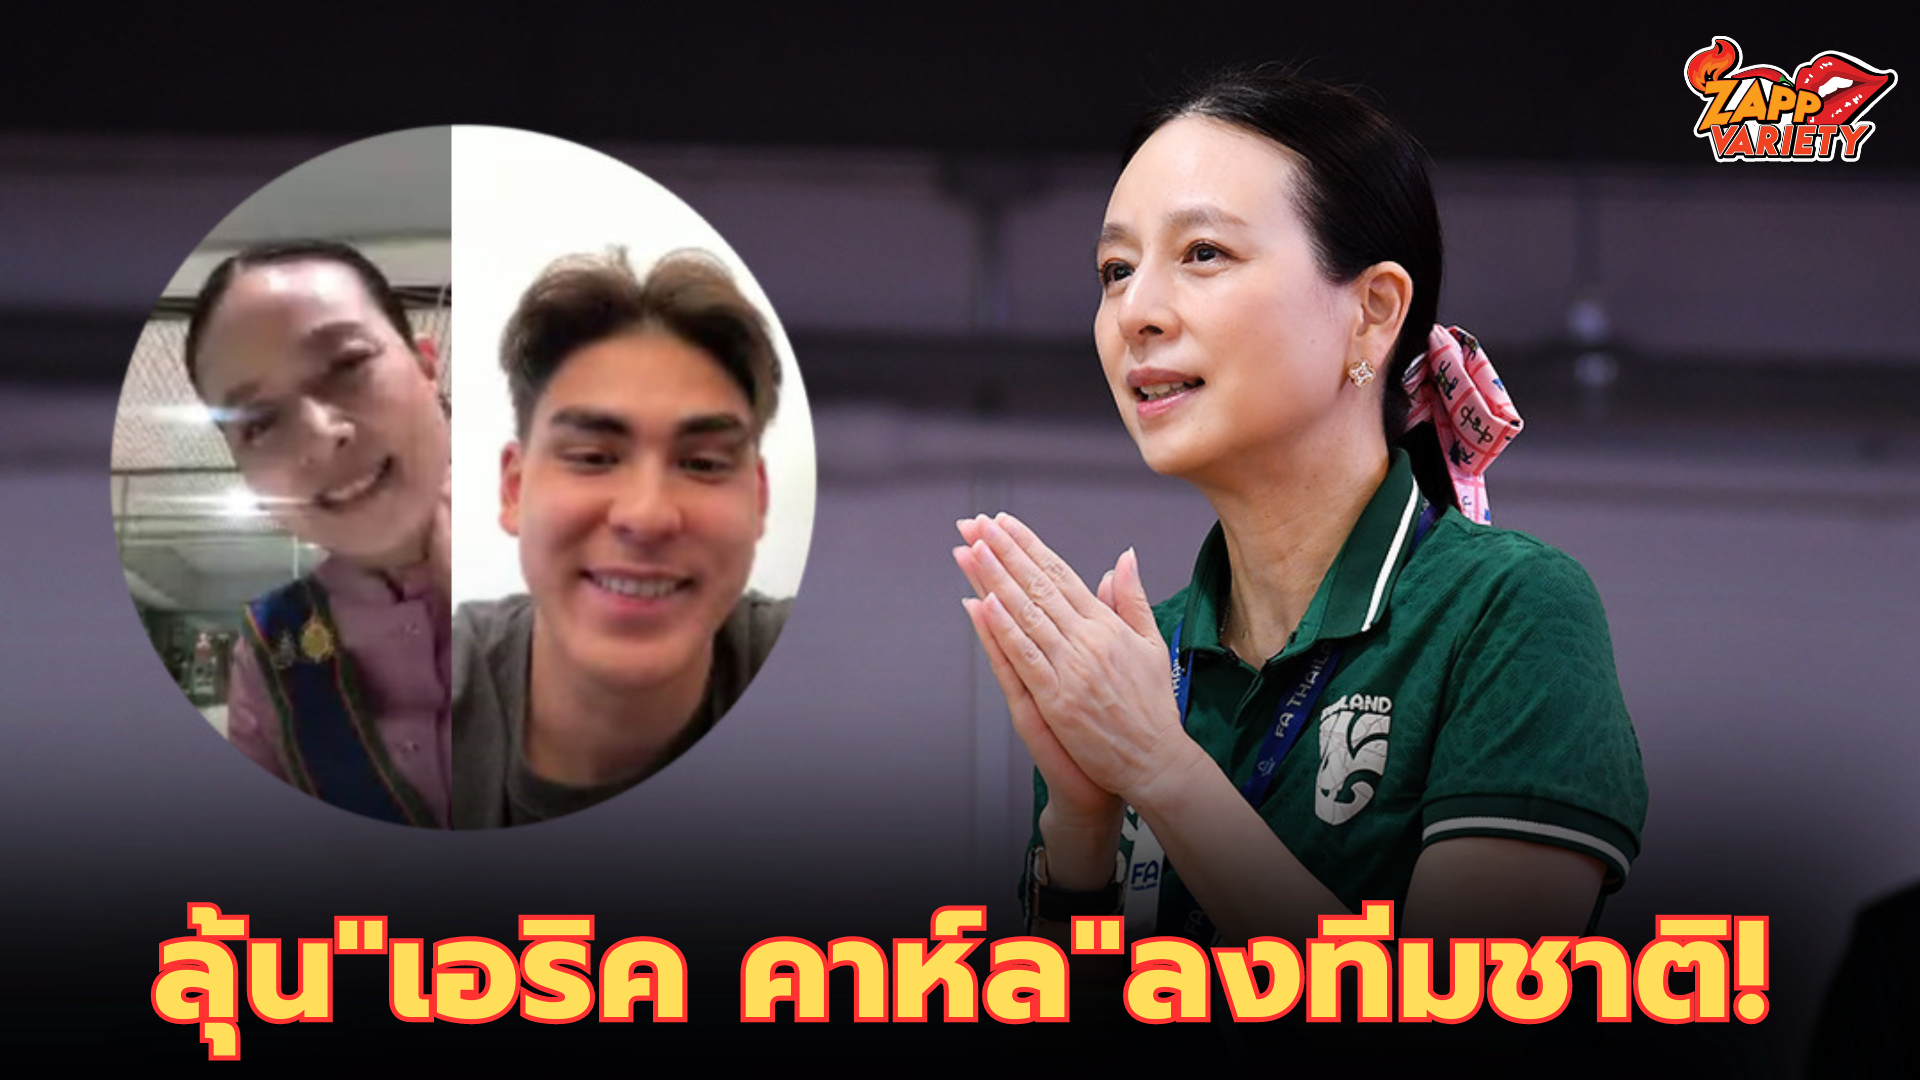 แฟนรอลุ้น! มาดามแป้ง ทาบทาม "เอริค คาห์ล" ช่วยทีมชาติไทย ลุยคัดบอลโลก-เอเชียน คัพ